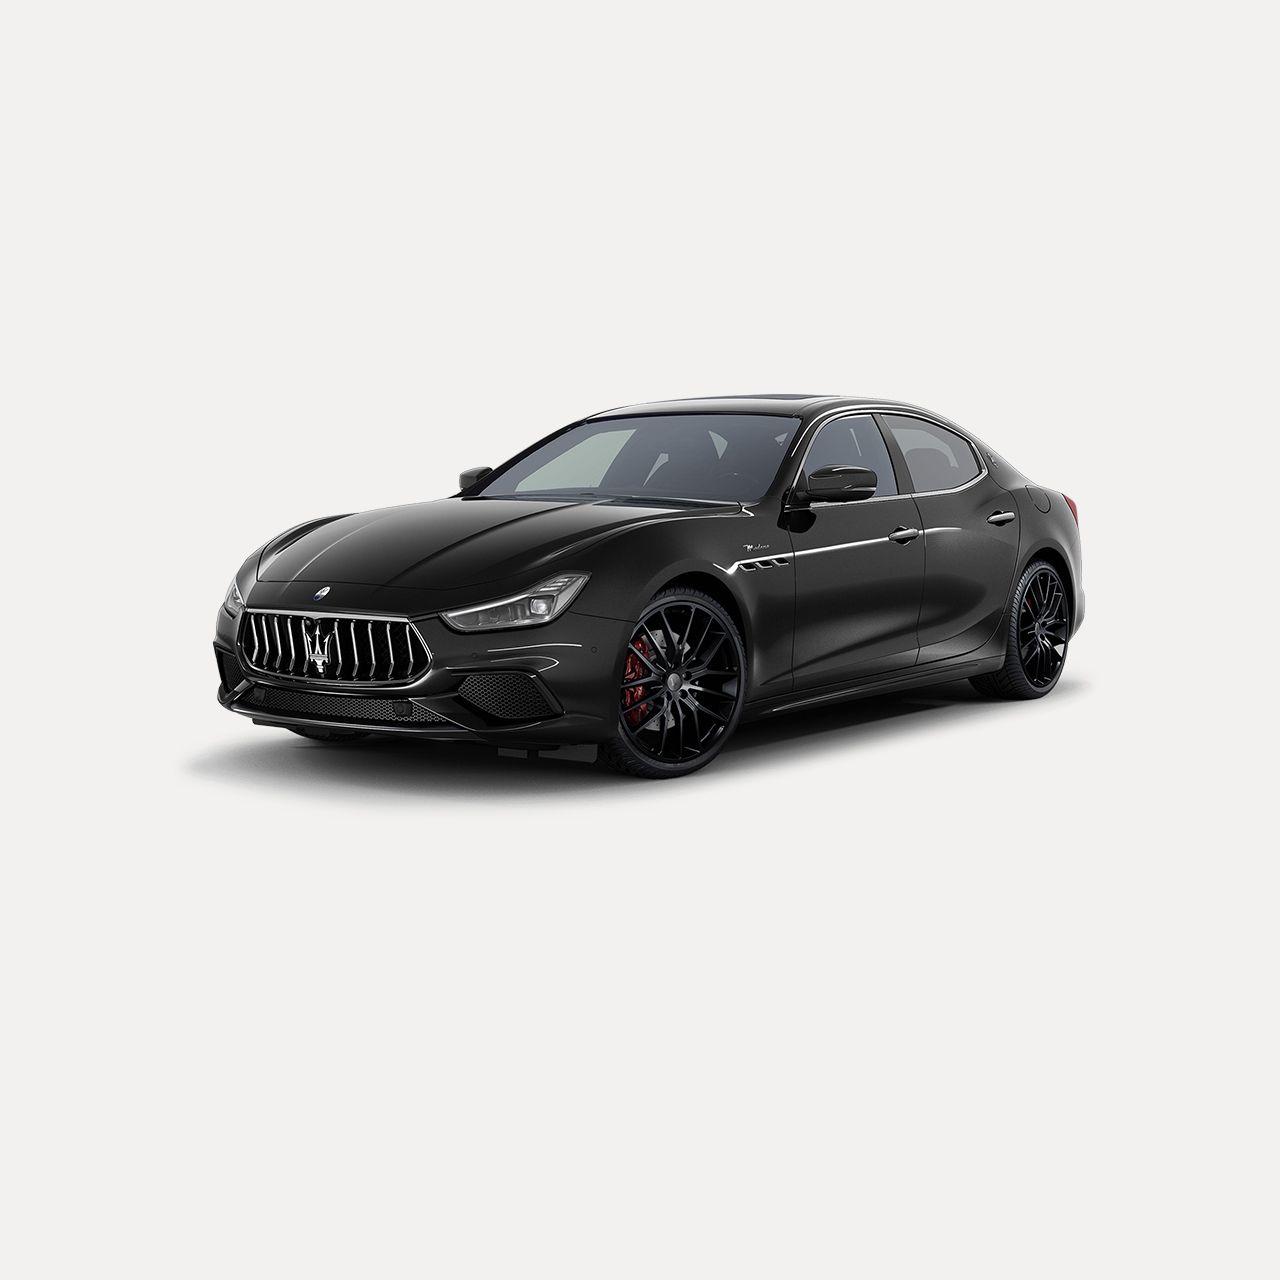 Seitenansicht des schwarzen Maserati Ghibli